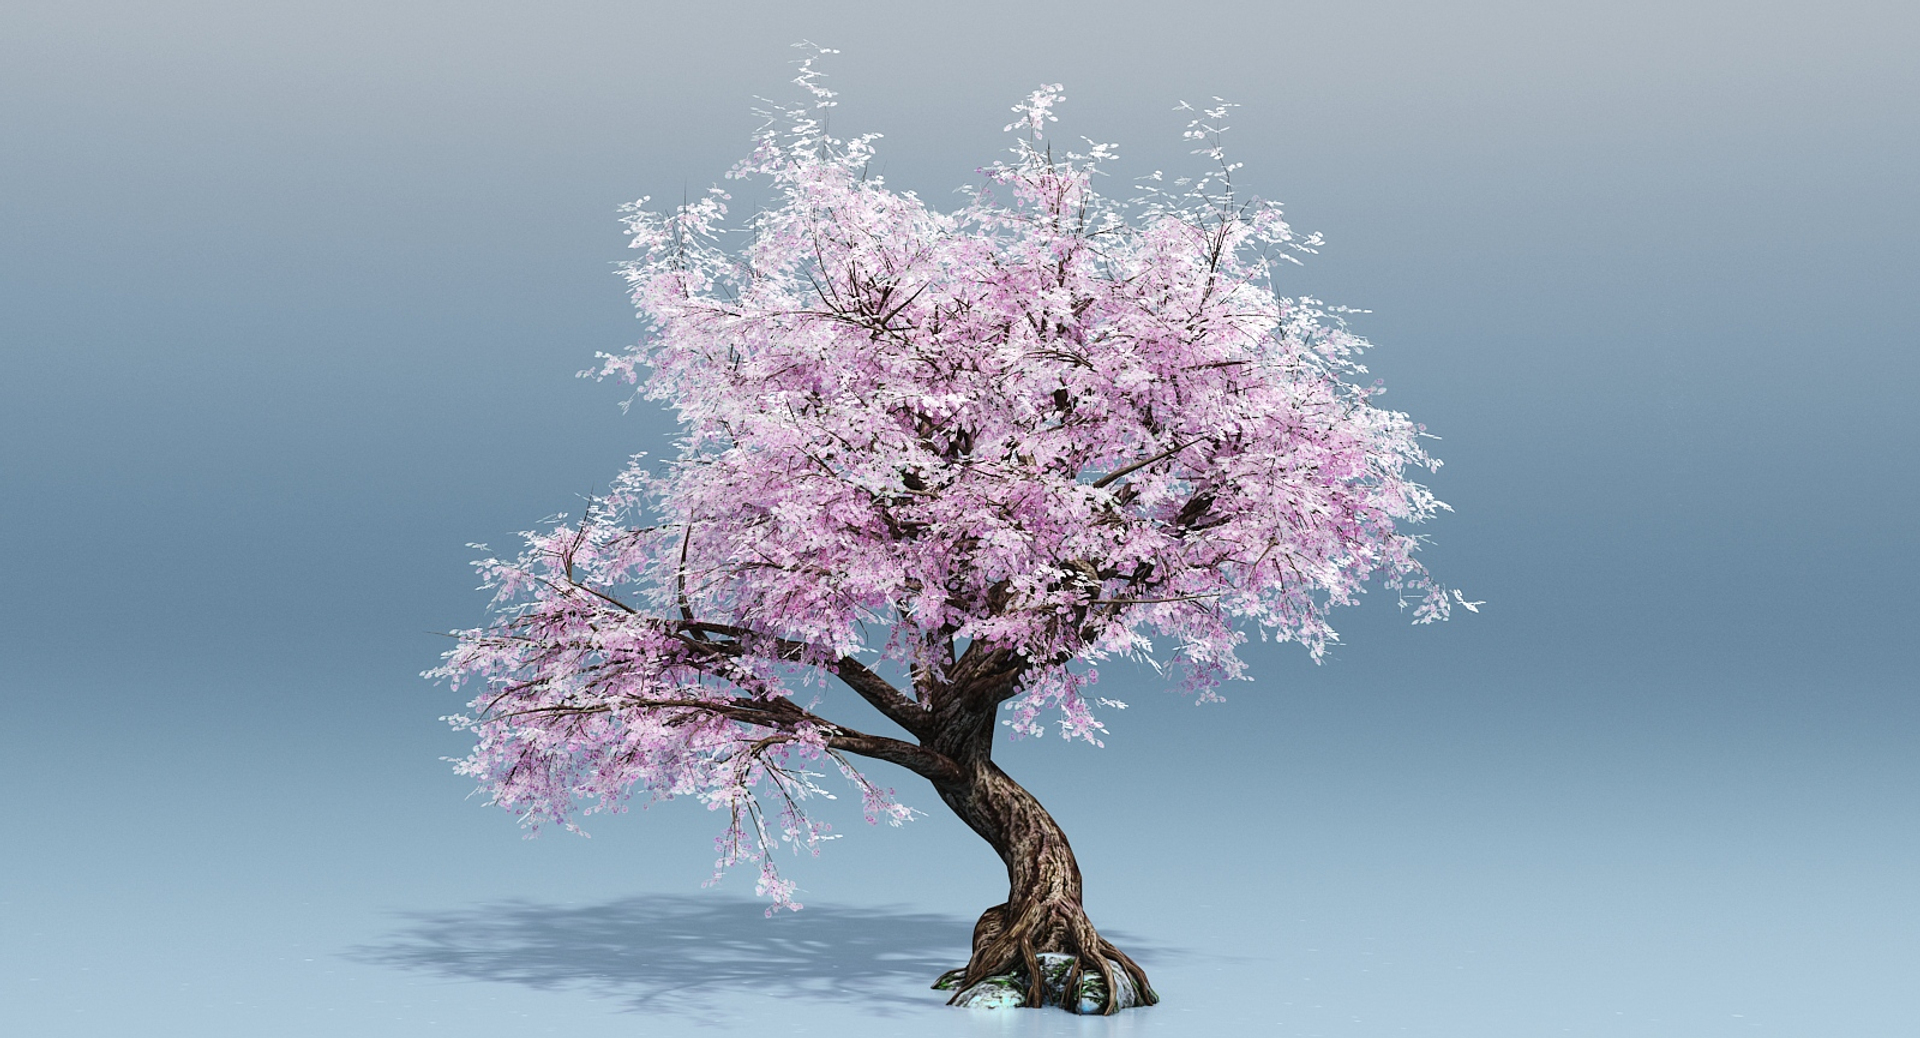 cherry blossom tree 3D https://p.turbosquid.com/ts-thumb/xc/3axg5U/Ol49GIRM/cherryblossom/jpg/1501995883/1920x1080/turn_fit_q99/085ccf7f5233fc48655f9d203b81cc3f8f07cfa8/cherryblossom-1.jpg